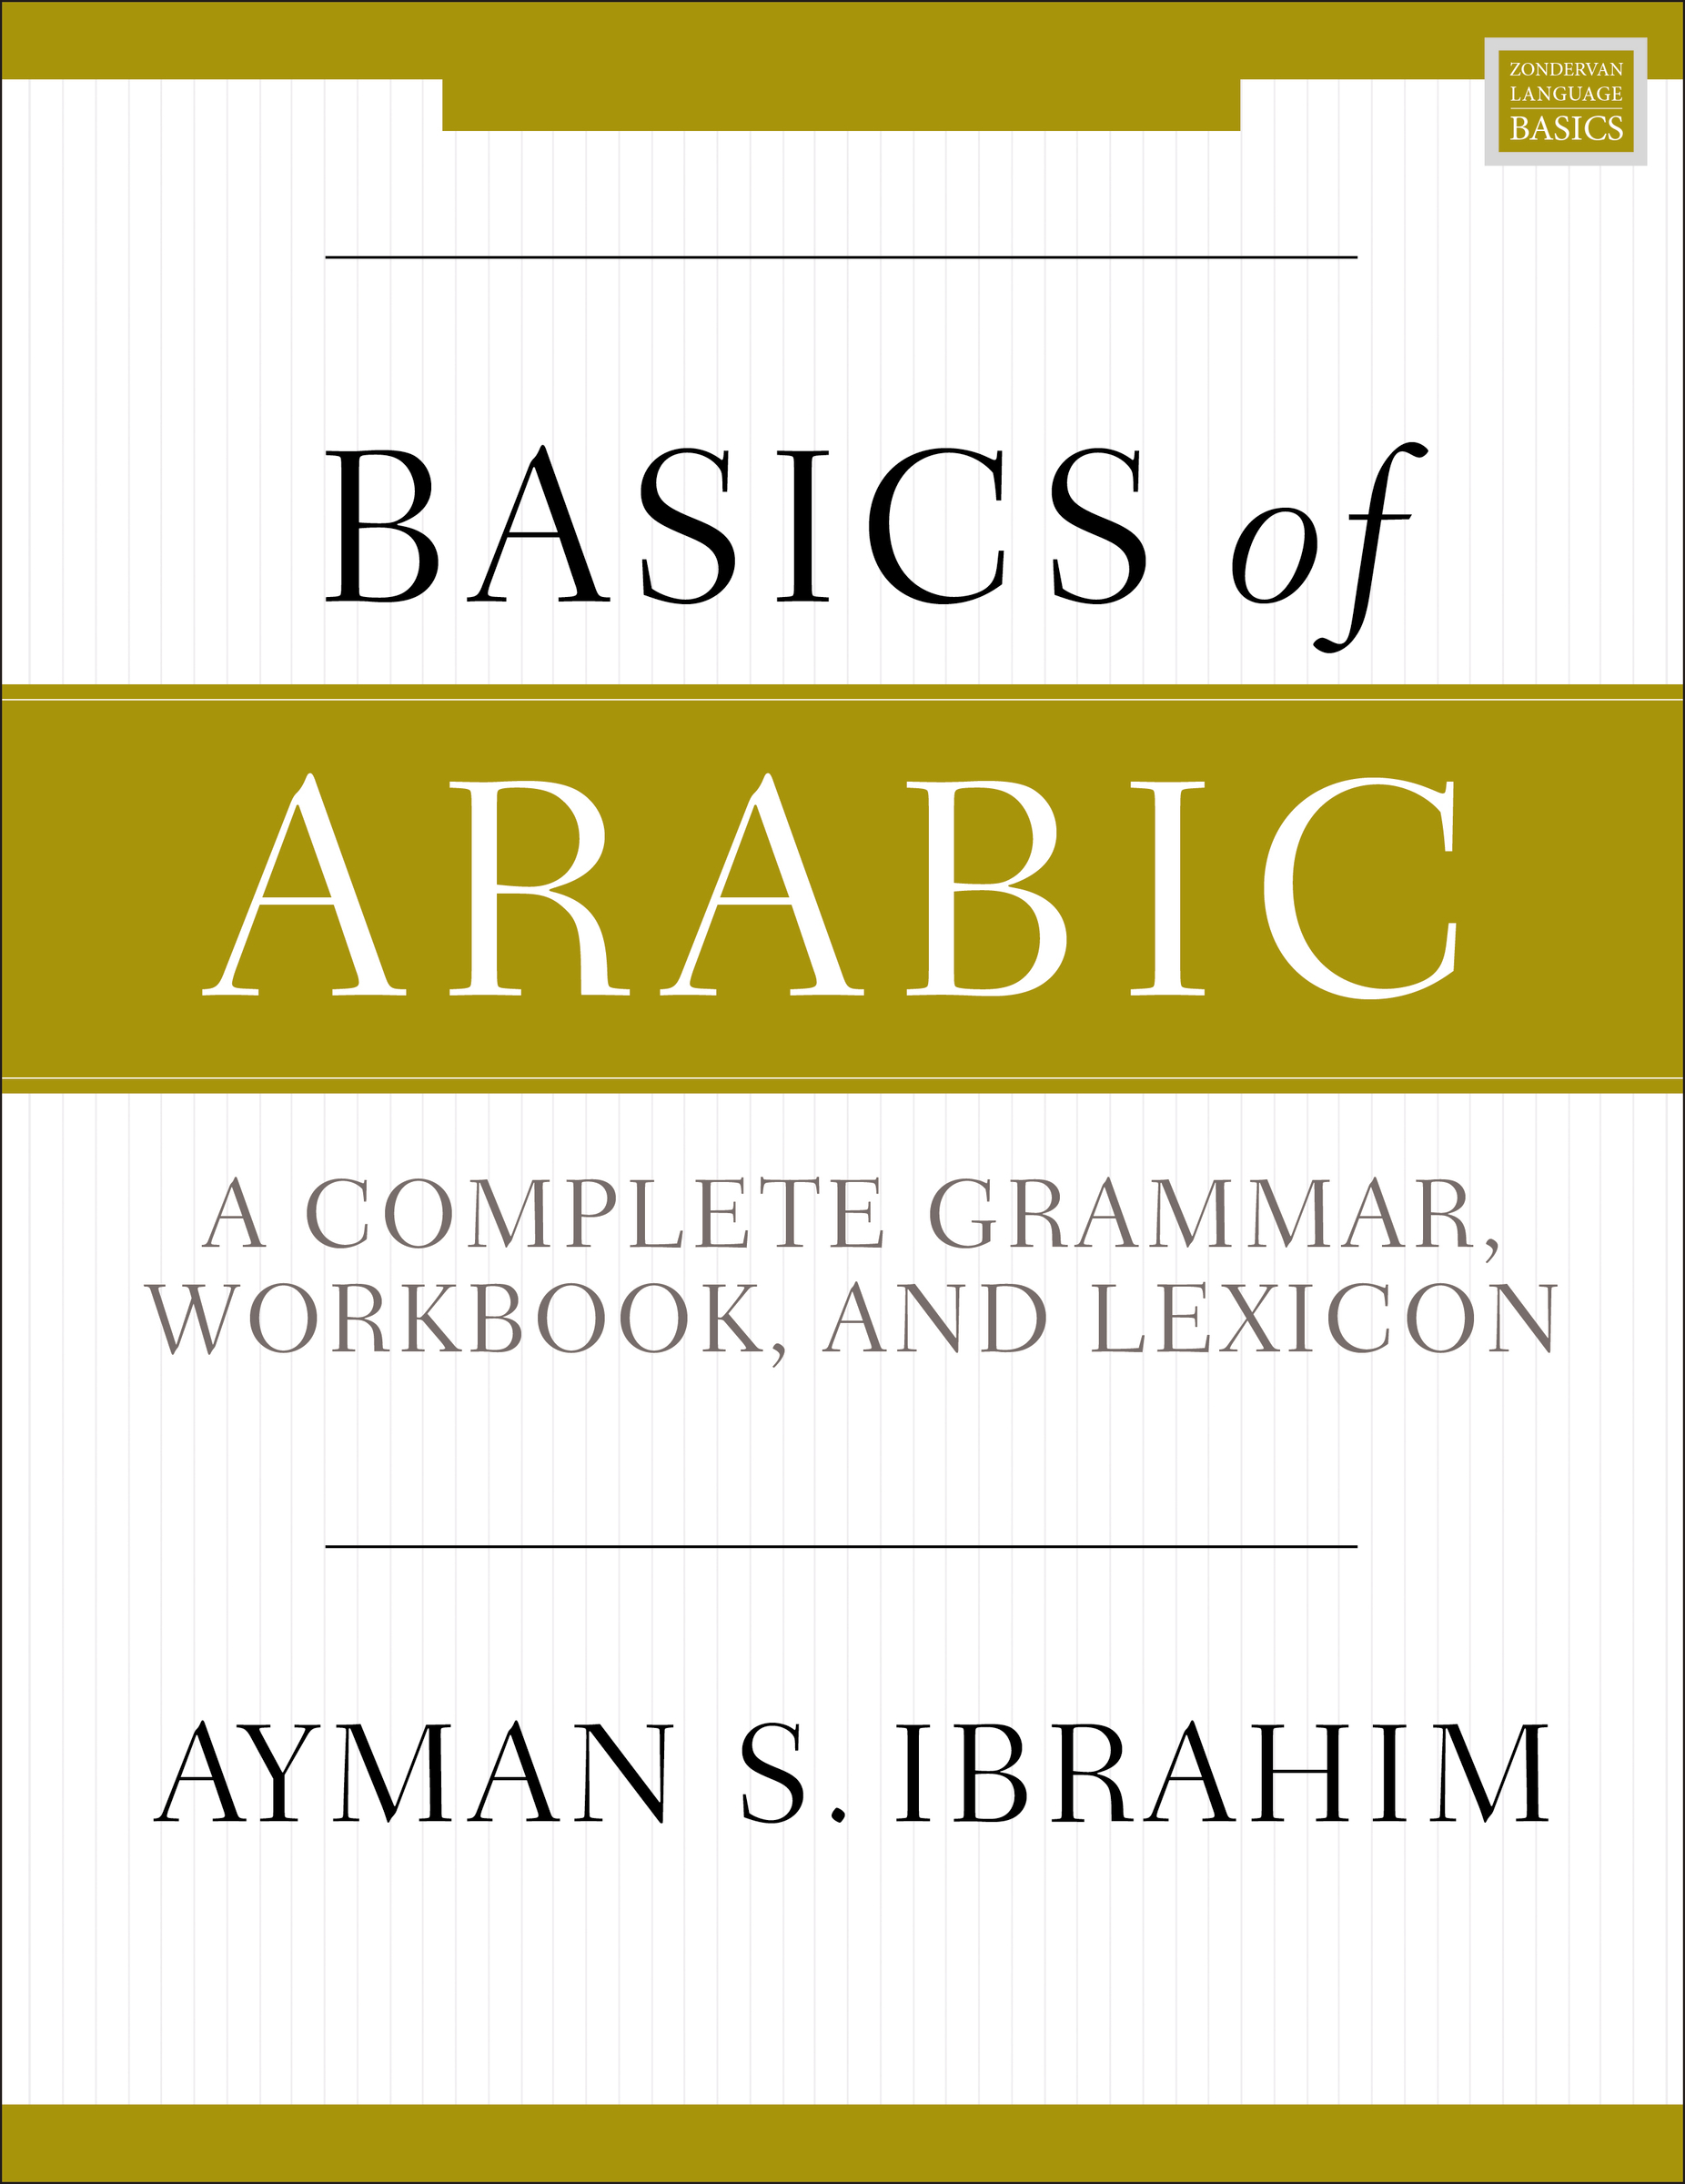 Basics of Arabic